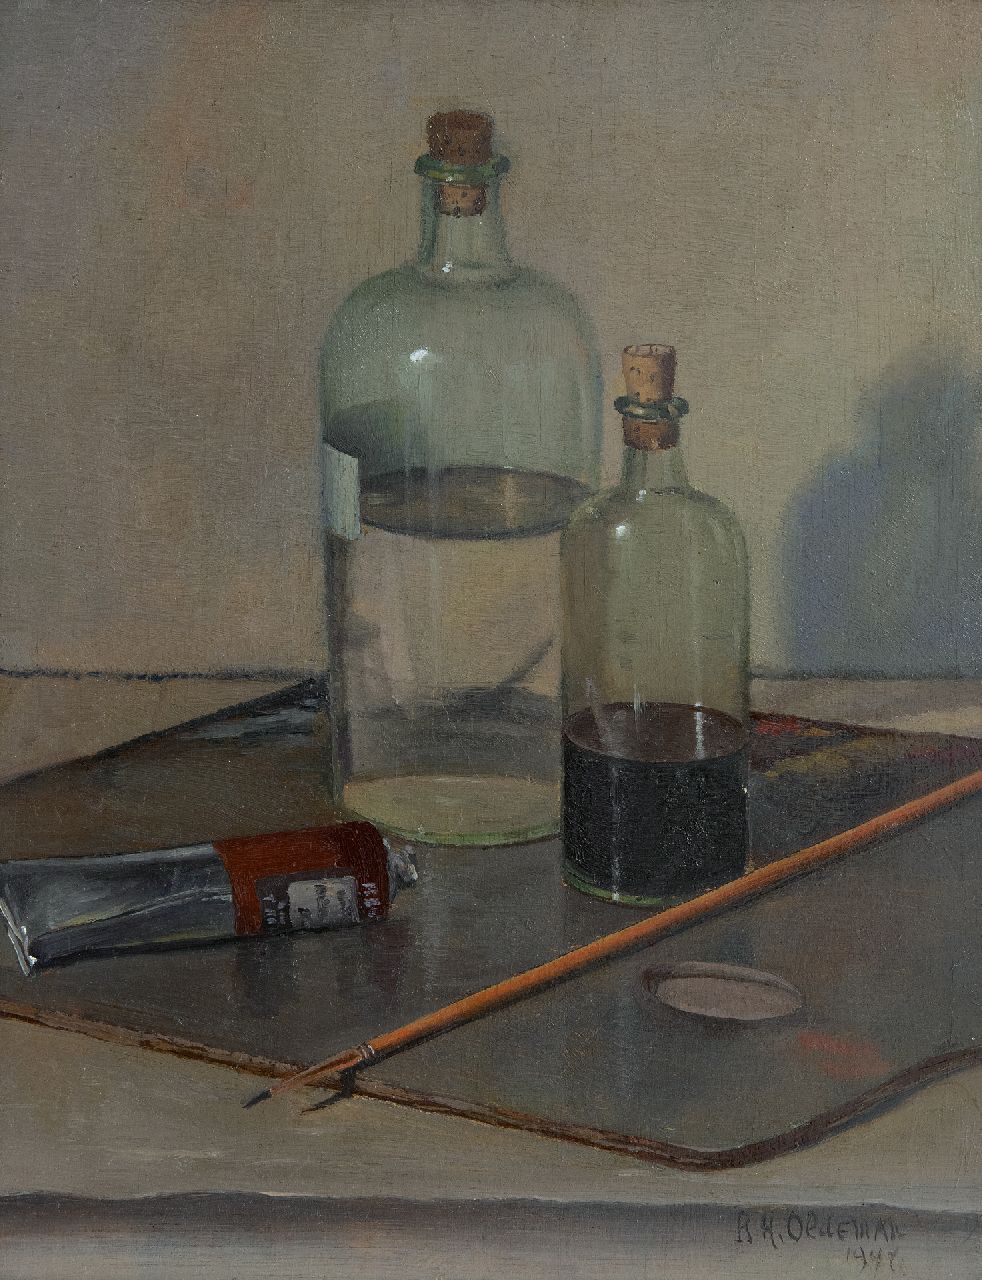 Oldeman R.H.  | Rudolf Hendrik Oldeman | Schilderijen te koop aangeboden | Schildergerei, olieverf op paneel 32,0 x 25,4 cm, gesigneerd rechtsonder en gedateerd 1948